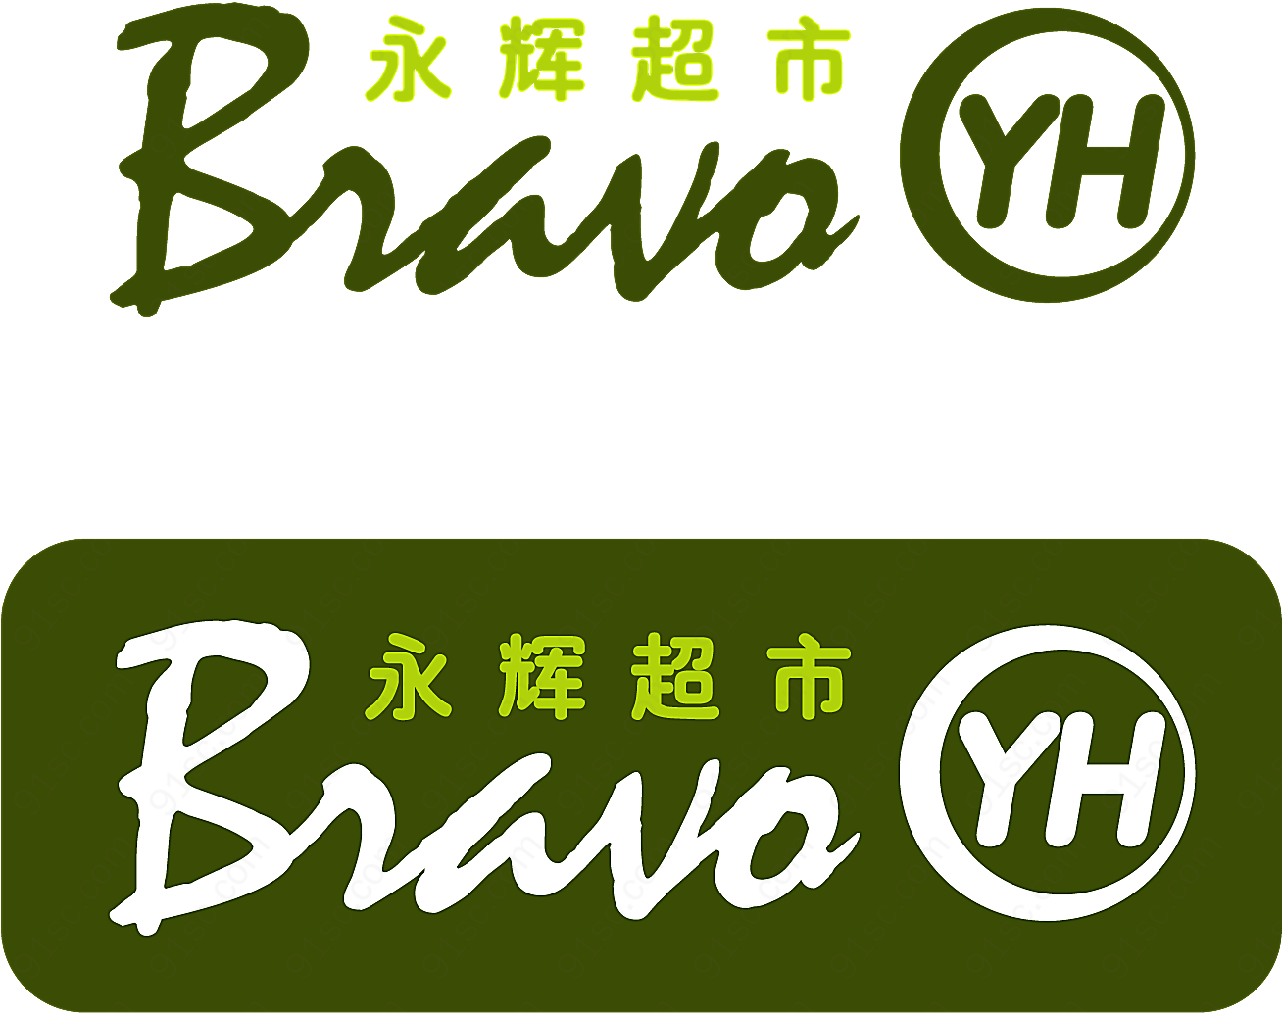 bravo超市logo矢量服务行业标志